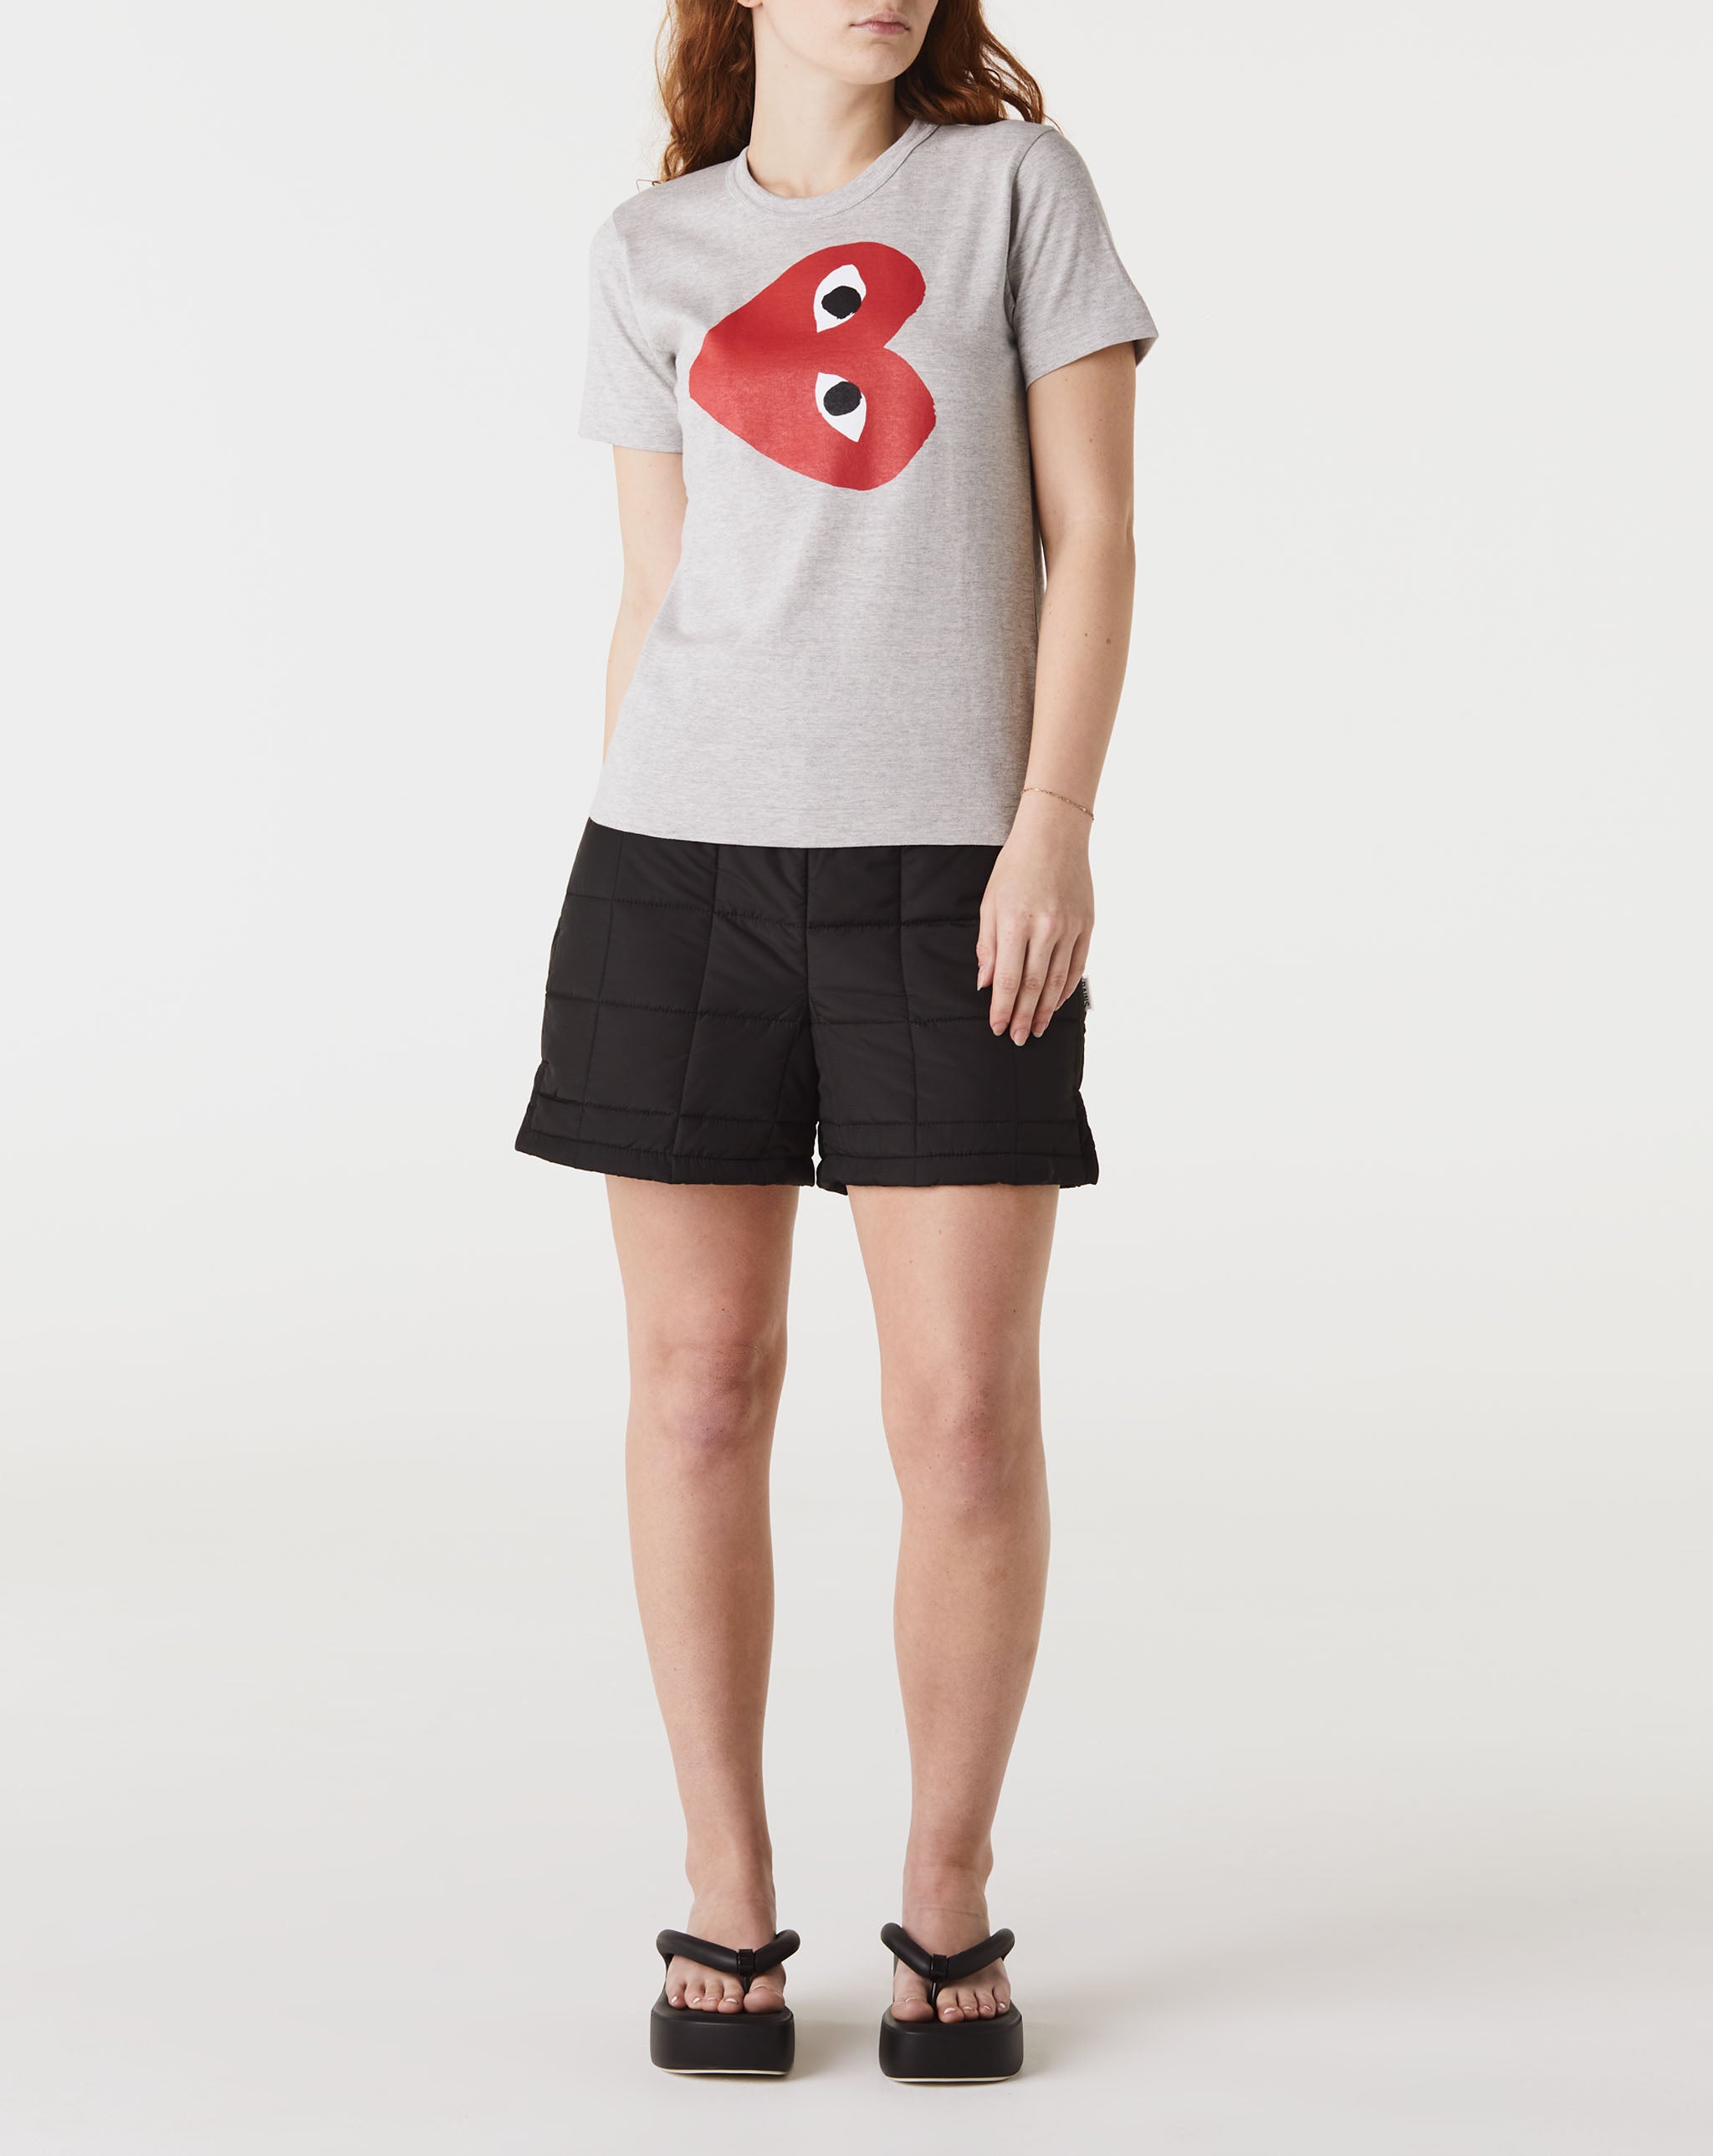 Womens Mini Heart T-Shirt Women's Play Logo T-Shirt  - Cheap Erlebniswelt-fliegenfischen Jordan outlet